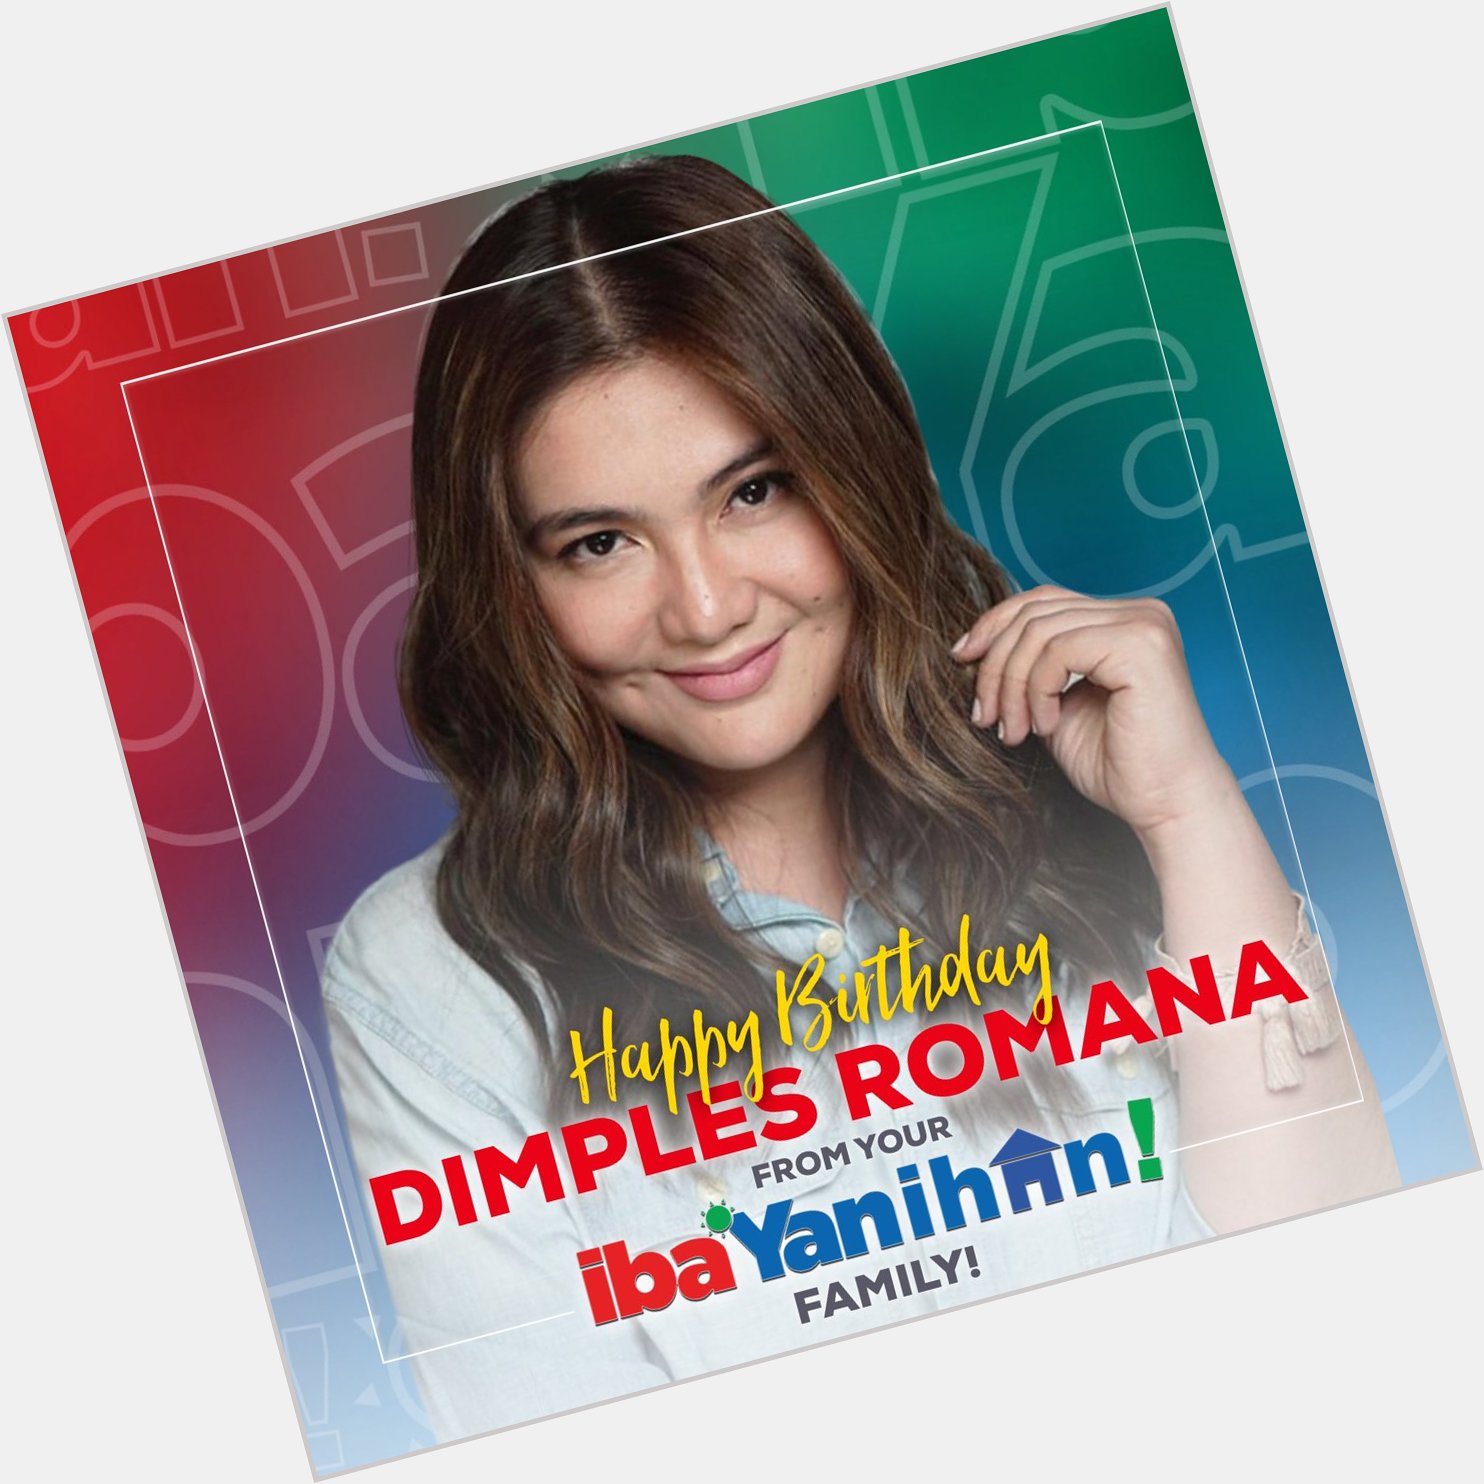 Happy Birthday Dimples Romana!  